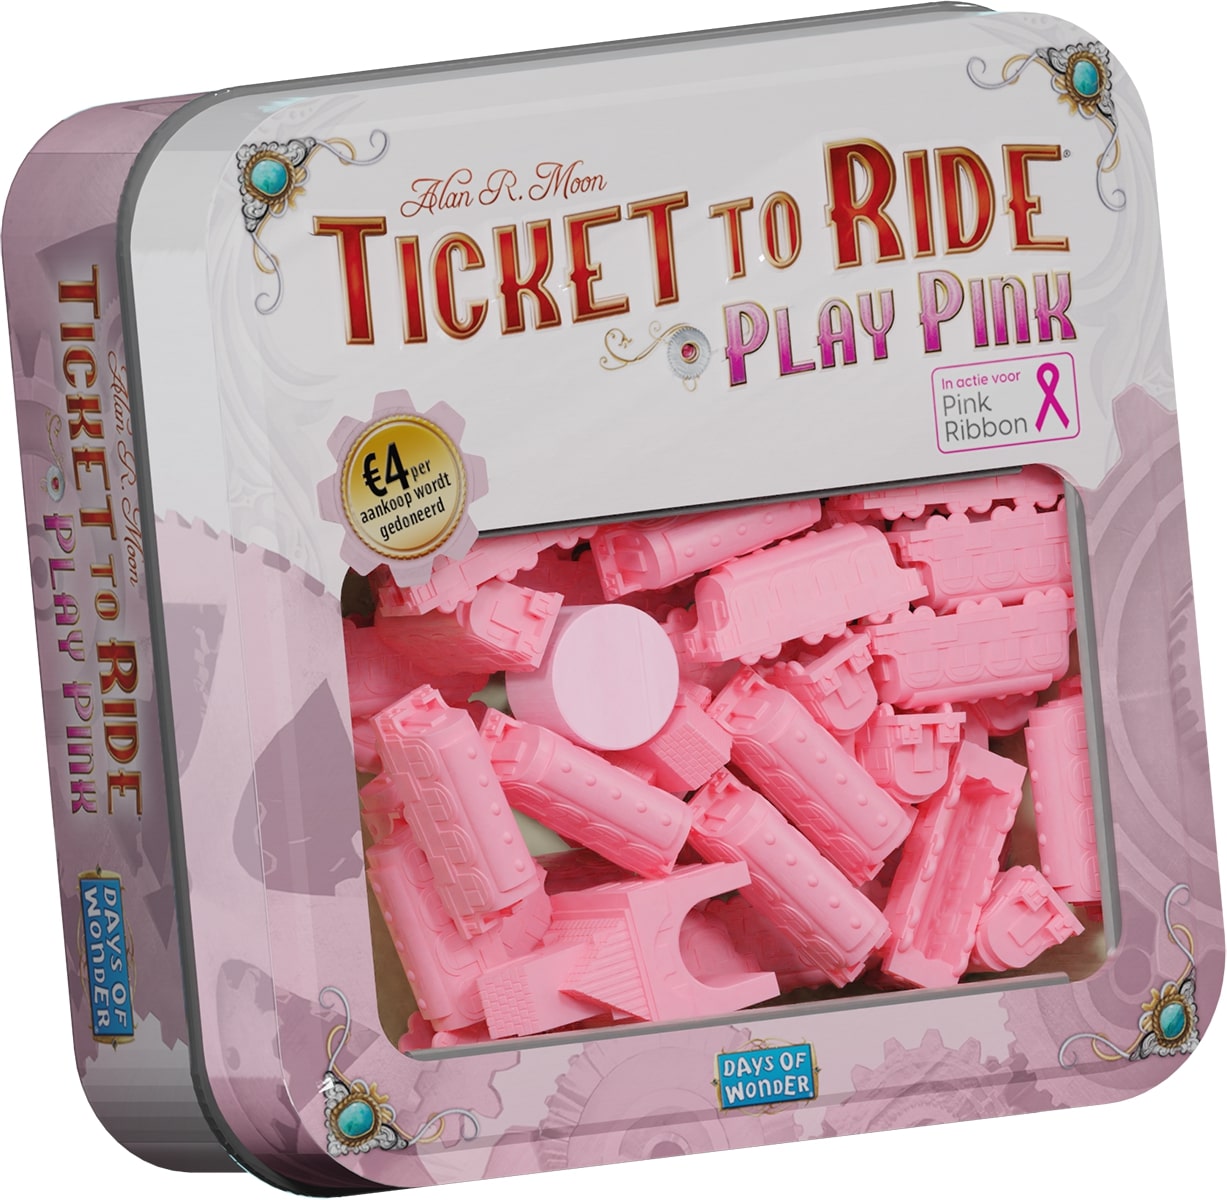 Steun Pink Ribbon met Ticket To Ride Play Pink